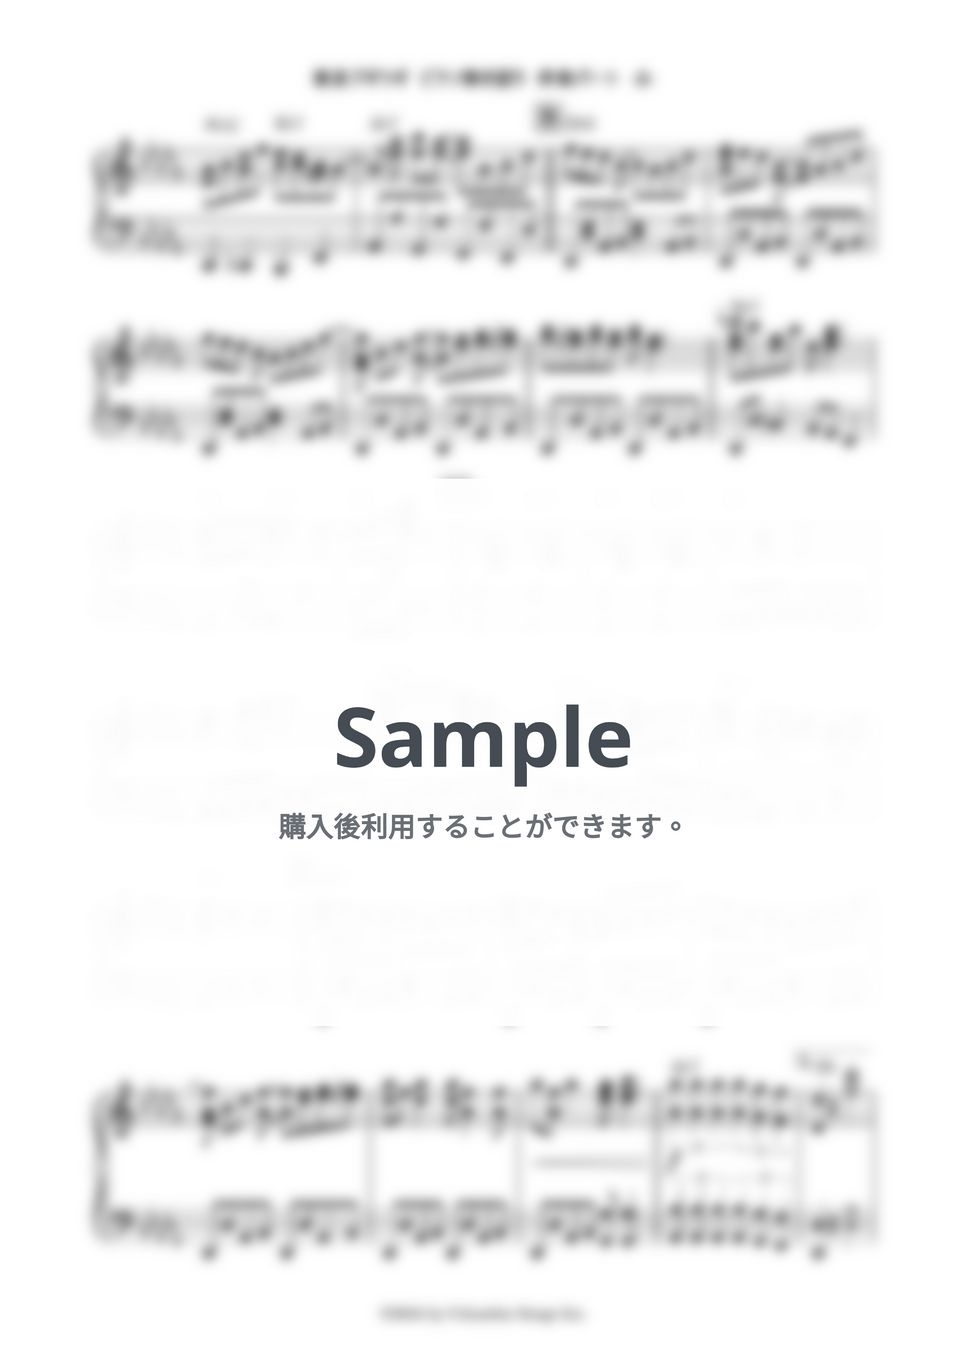 福来スズ子 - 東京ブギウギ (ピアノ伴奏のみ) by 鈴木建作